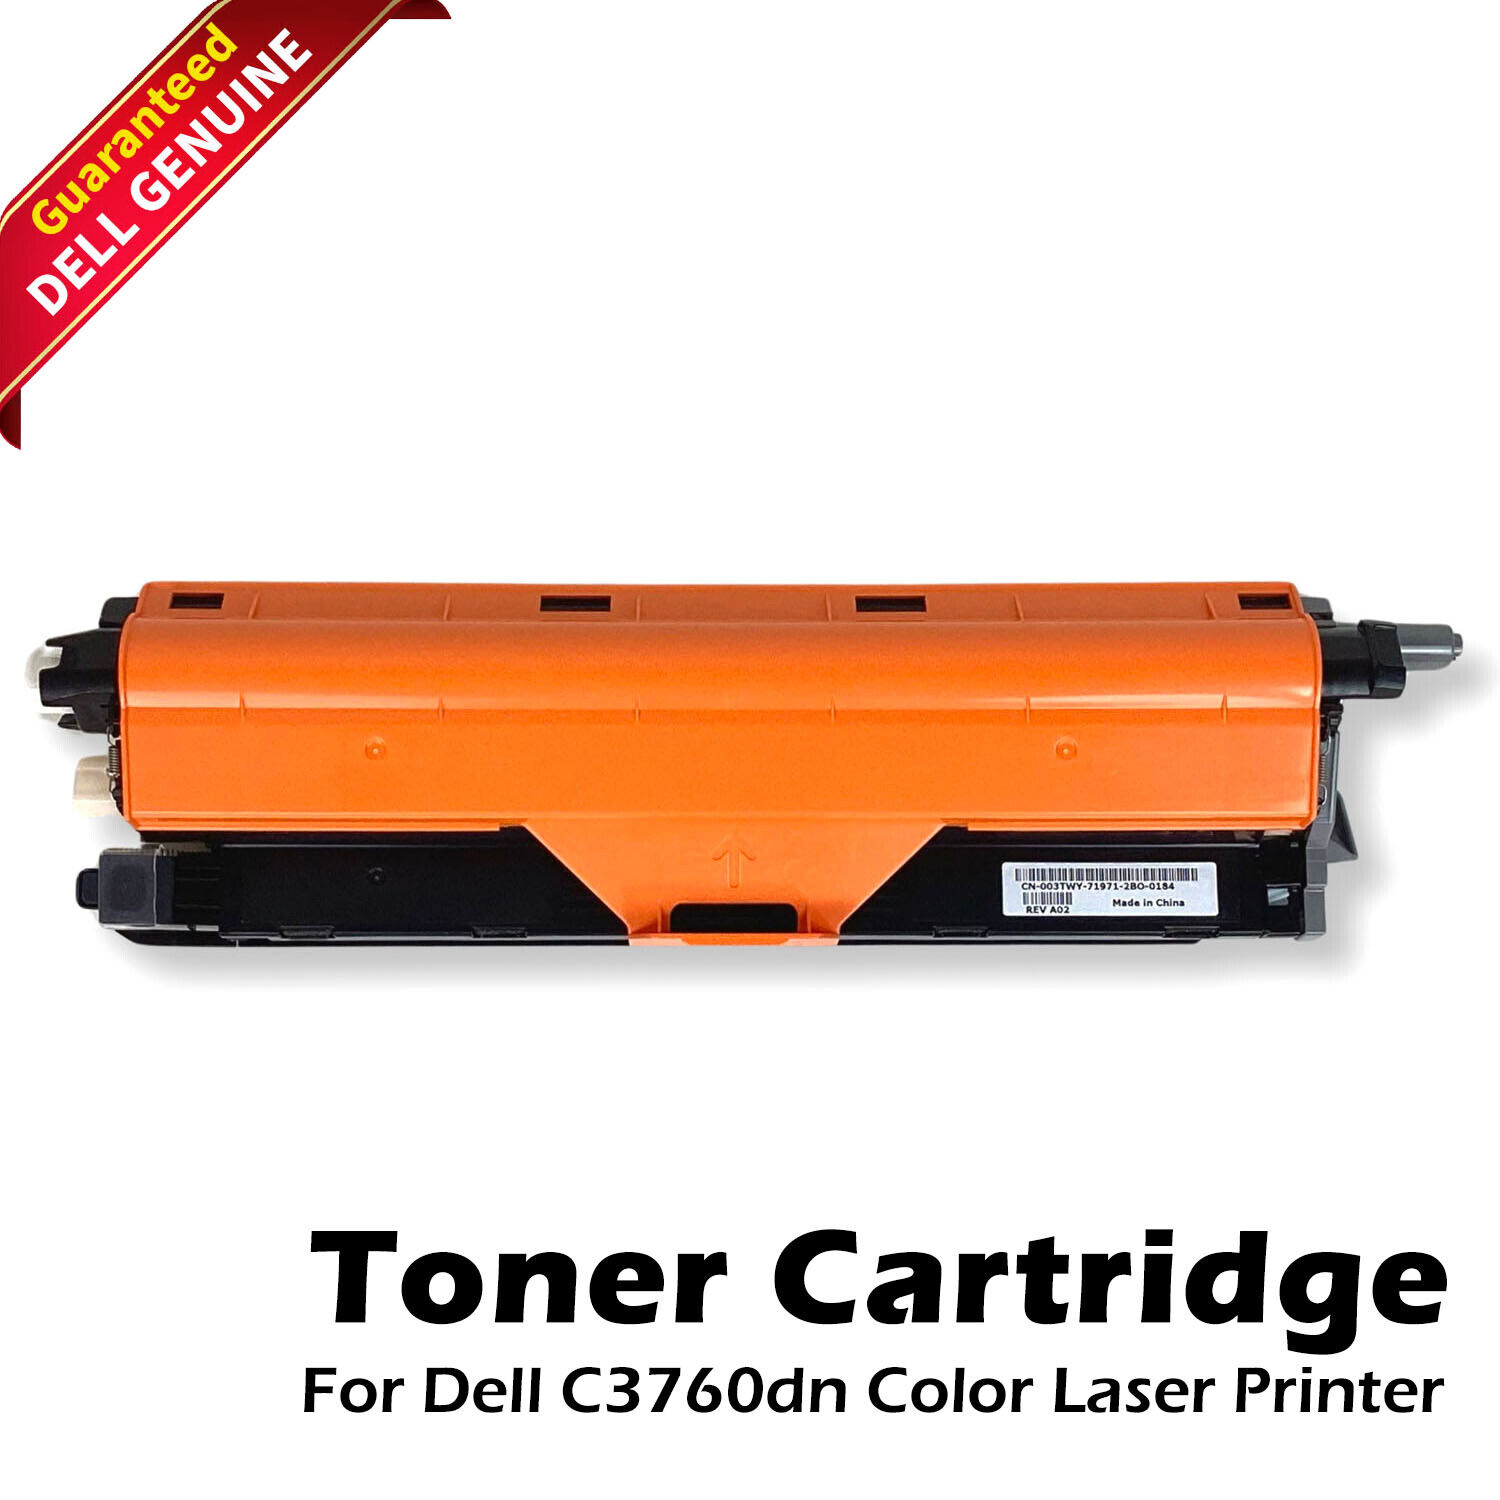 New Dell OEM Black Toner Cartridge for C3760dn Color Laser Printer 03TWY